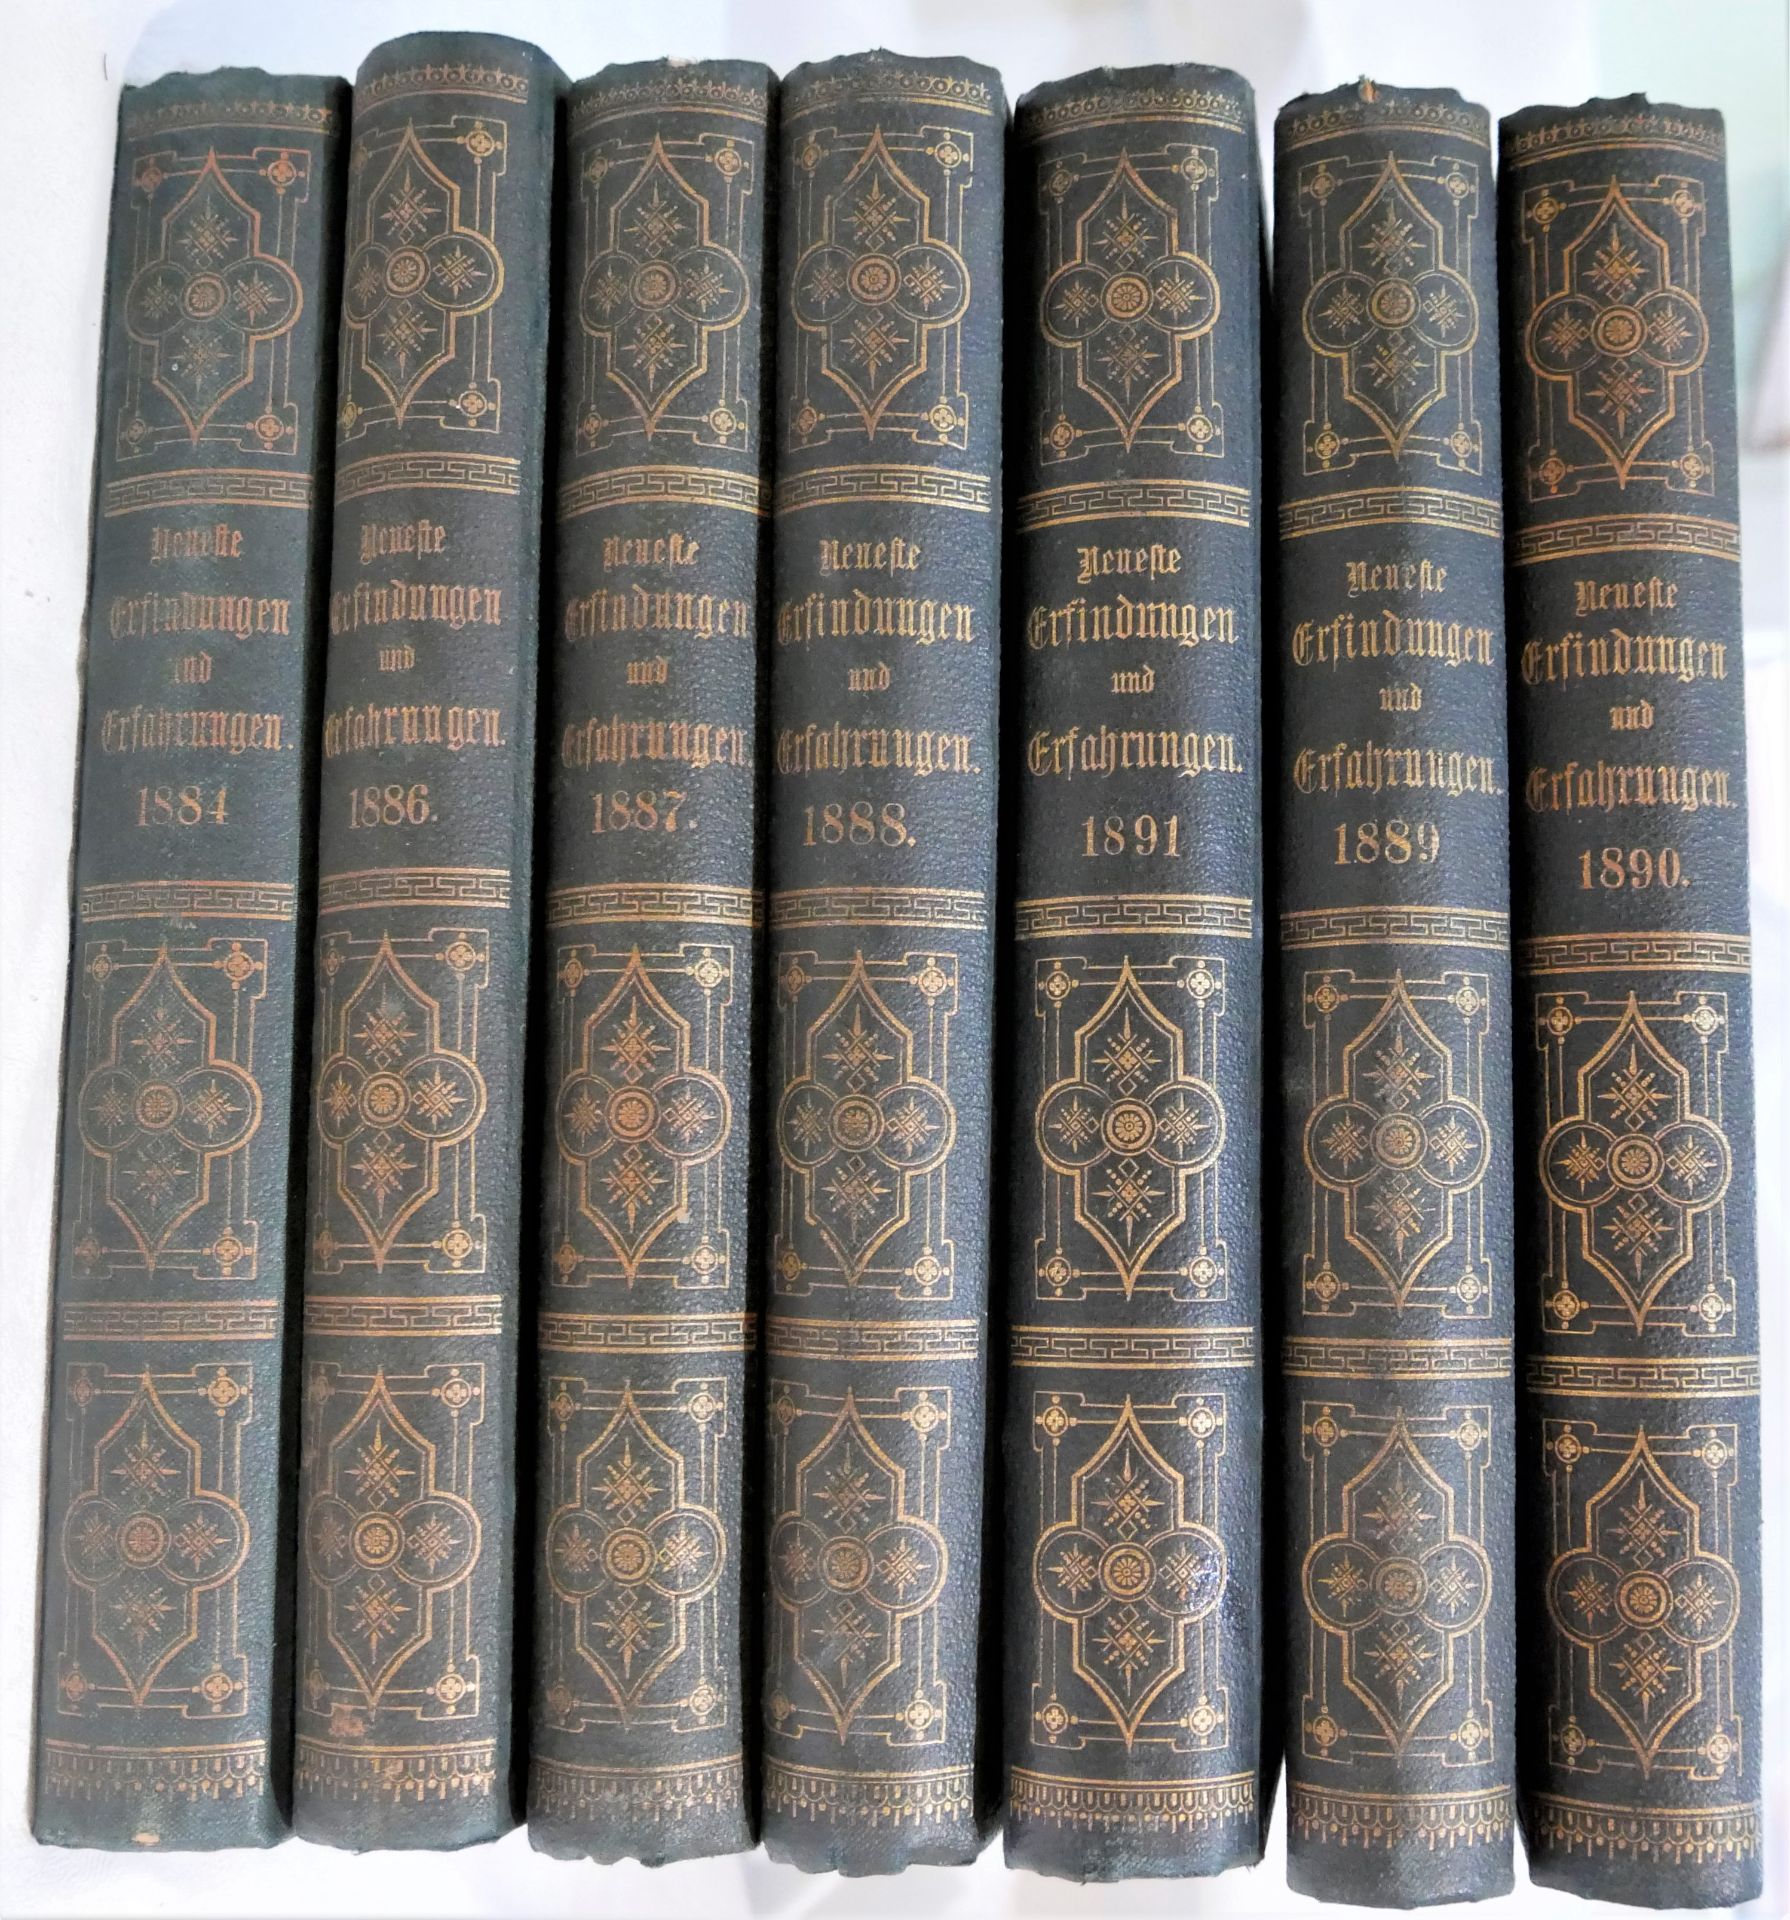 Neueste Erfindungen und Erfahrungen, 7 Bücher, bestehend aus den Jahrgängen 1884 - 1866 - 1891